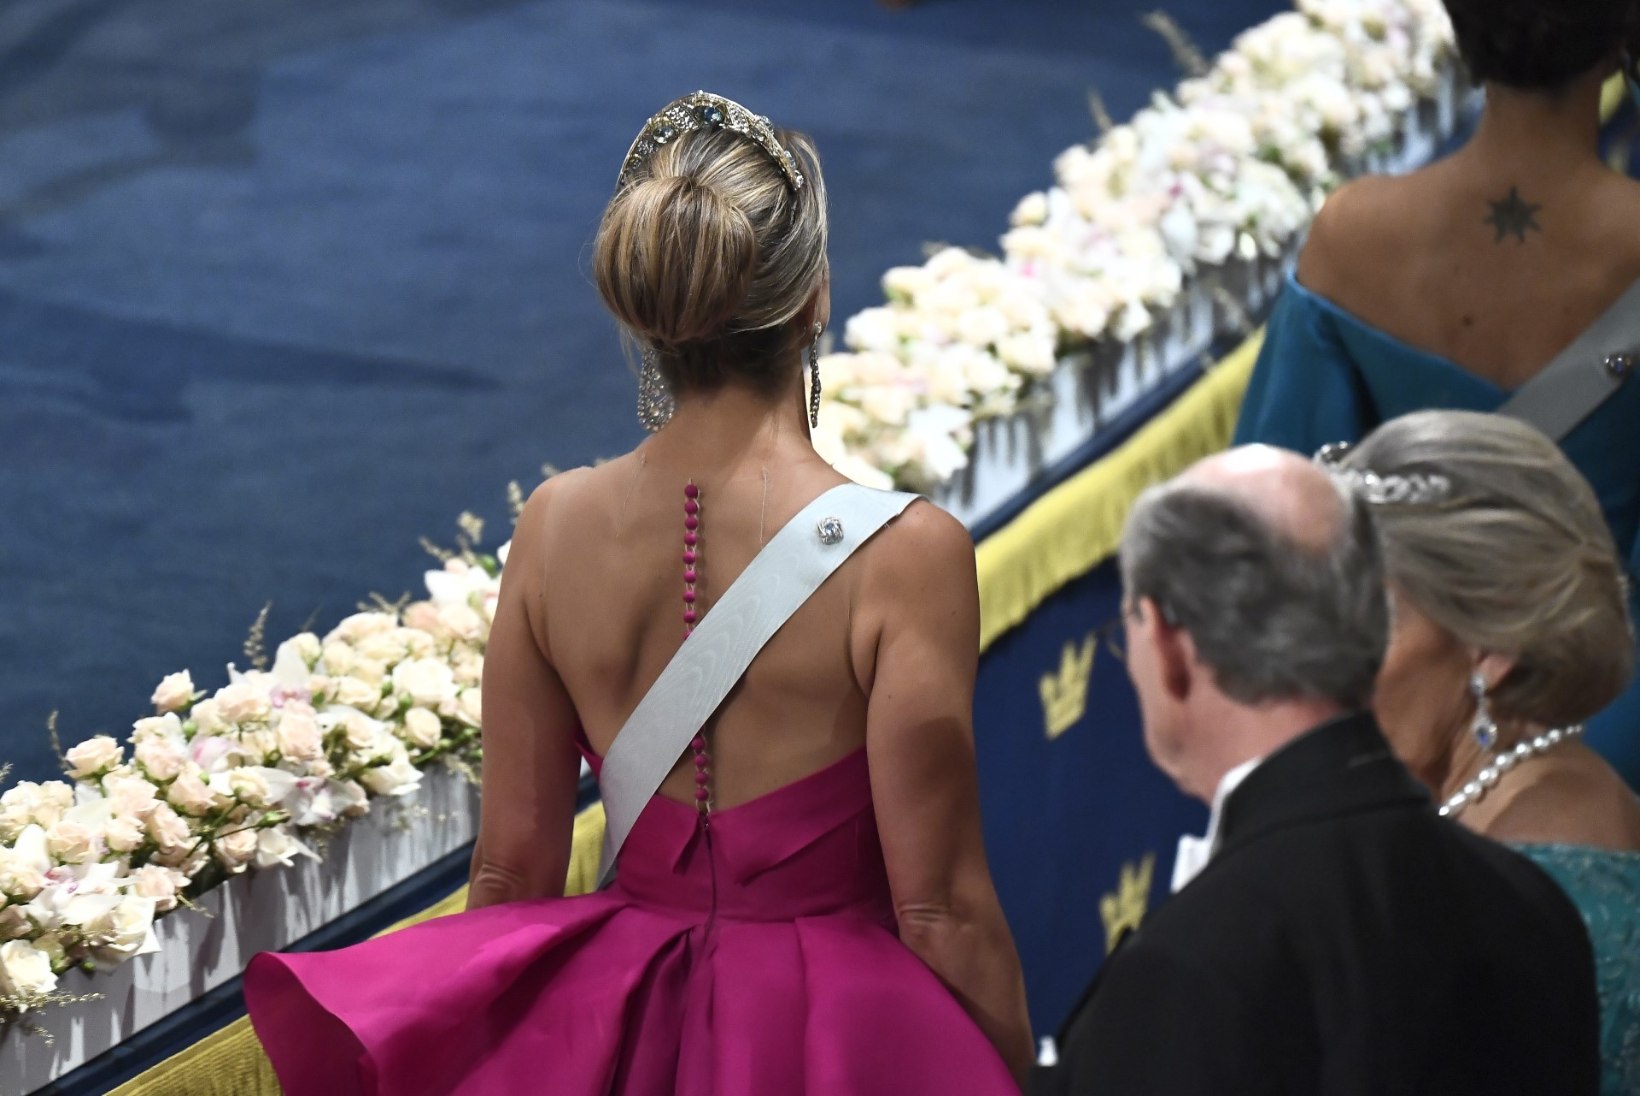 PALJAD ÕLAD JA BRILJANDISADU: Rootsi printsessid vajutasid Nobeli galal glamuuripedaali põhja